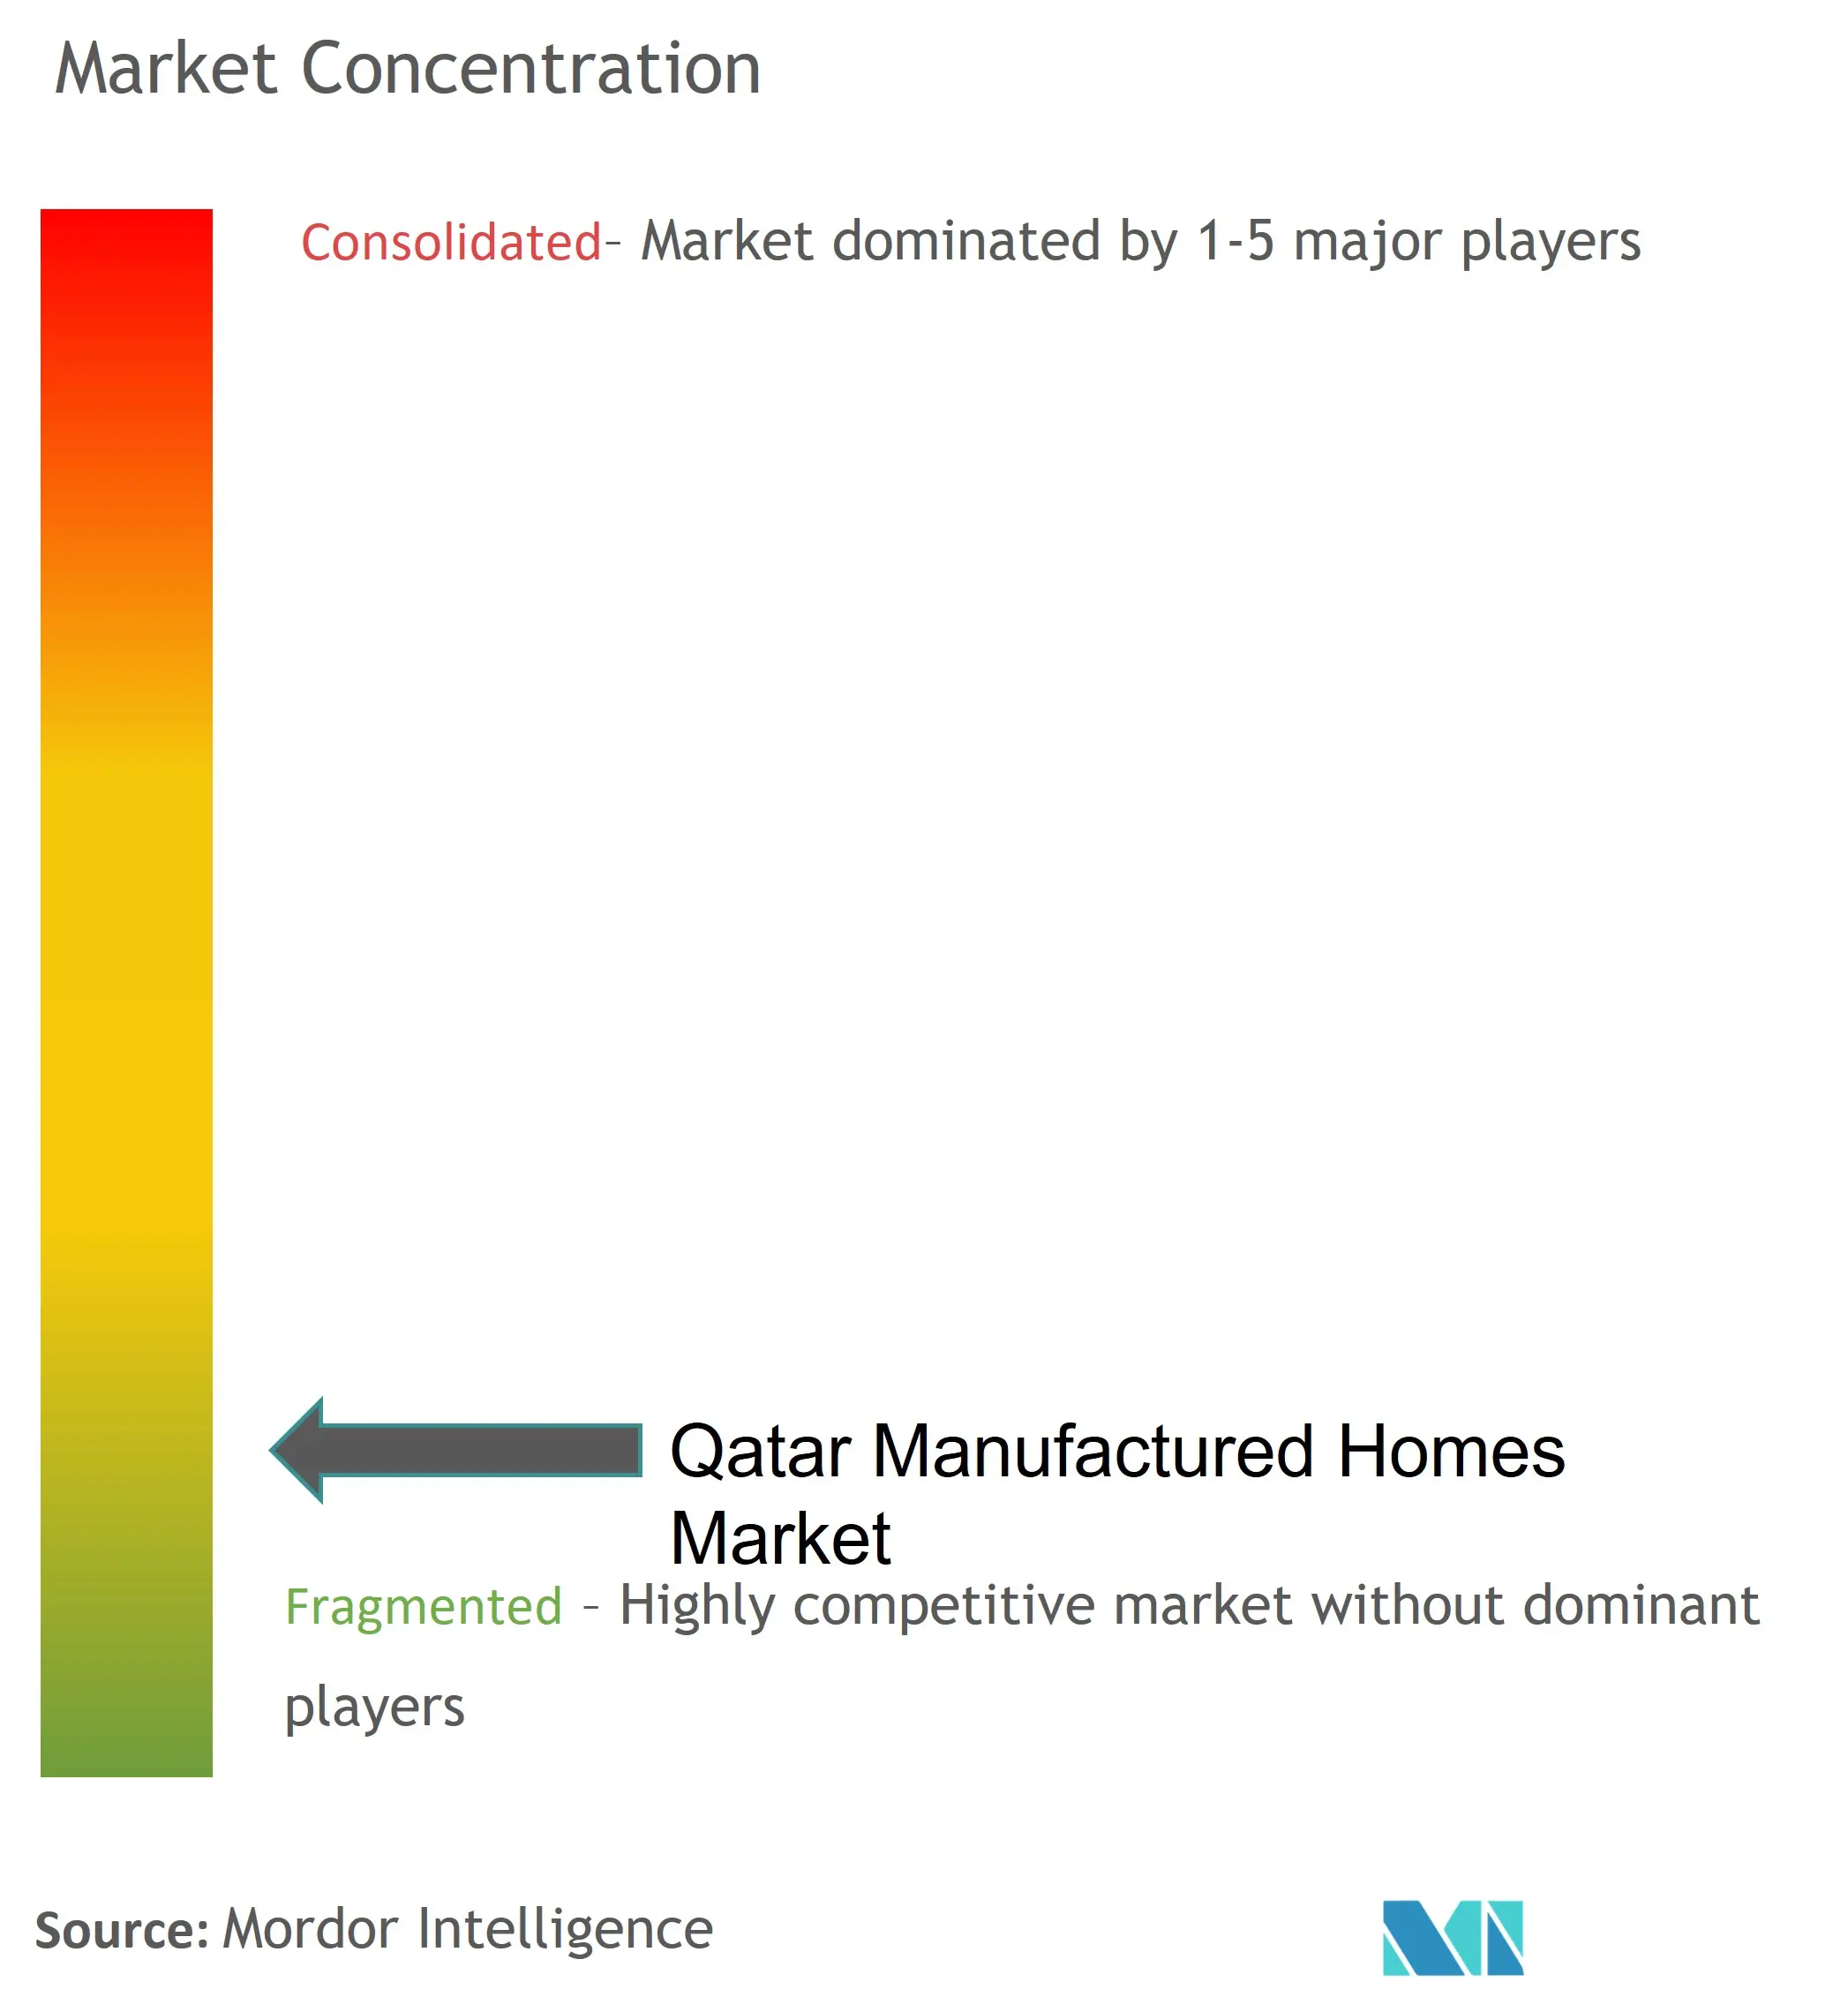 カタール製造住宅市場の集中